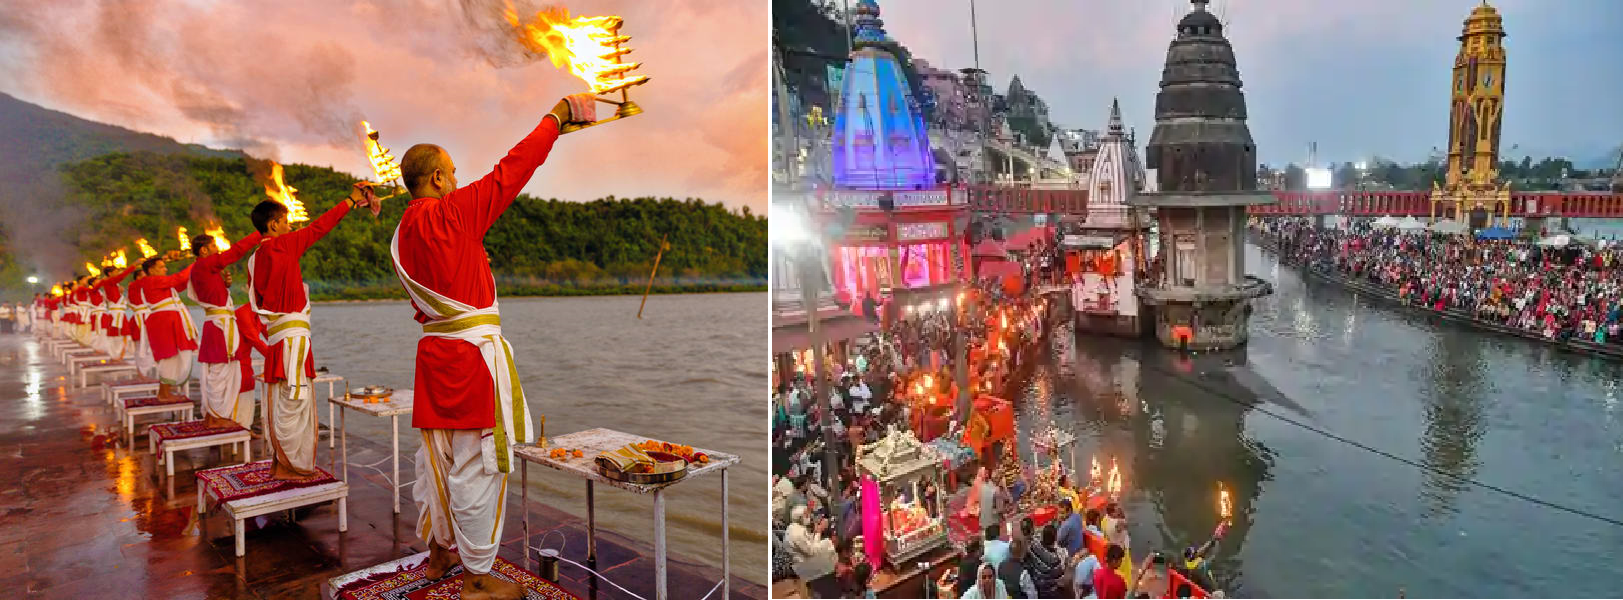 పవిత్ర పుణ్యస్తలం 'హరిద్వారము' - Haridwar